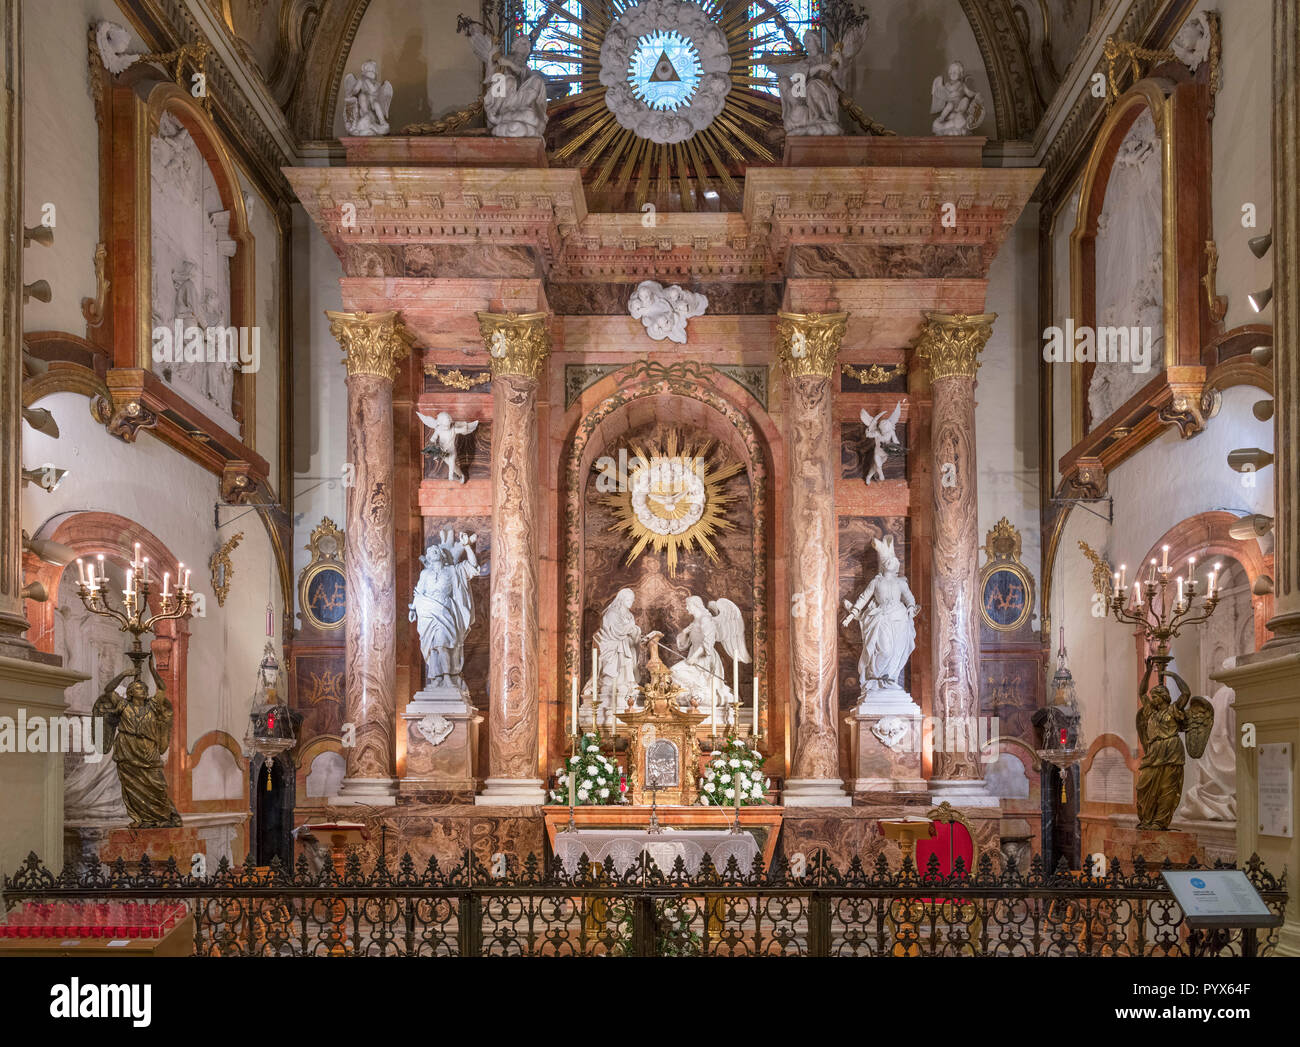 Capella de la Encarnacion (Cappella dell incarnazione), Cattedrale di Malaga, Malaga, Costa del Sol, Andalusia, Spagna Foto Stock